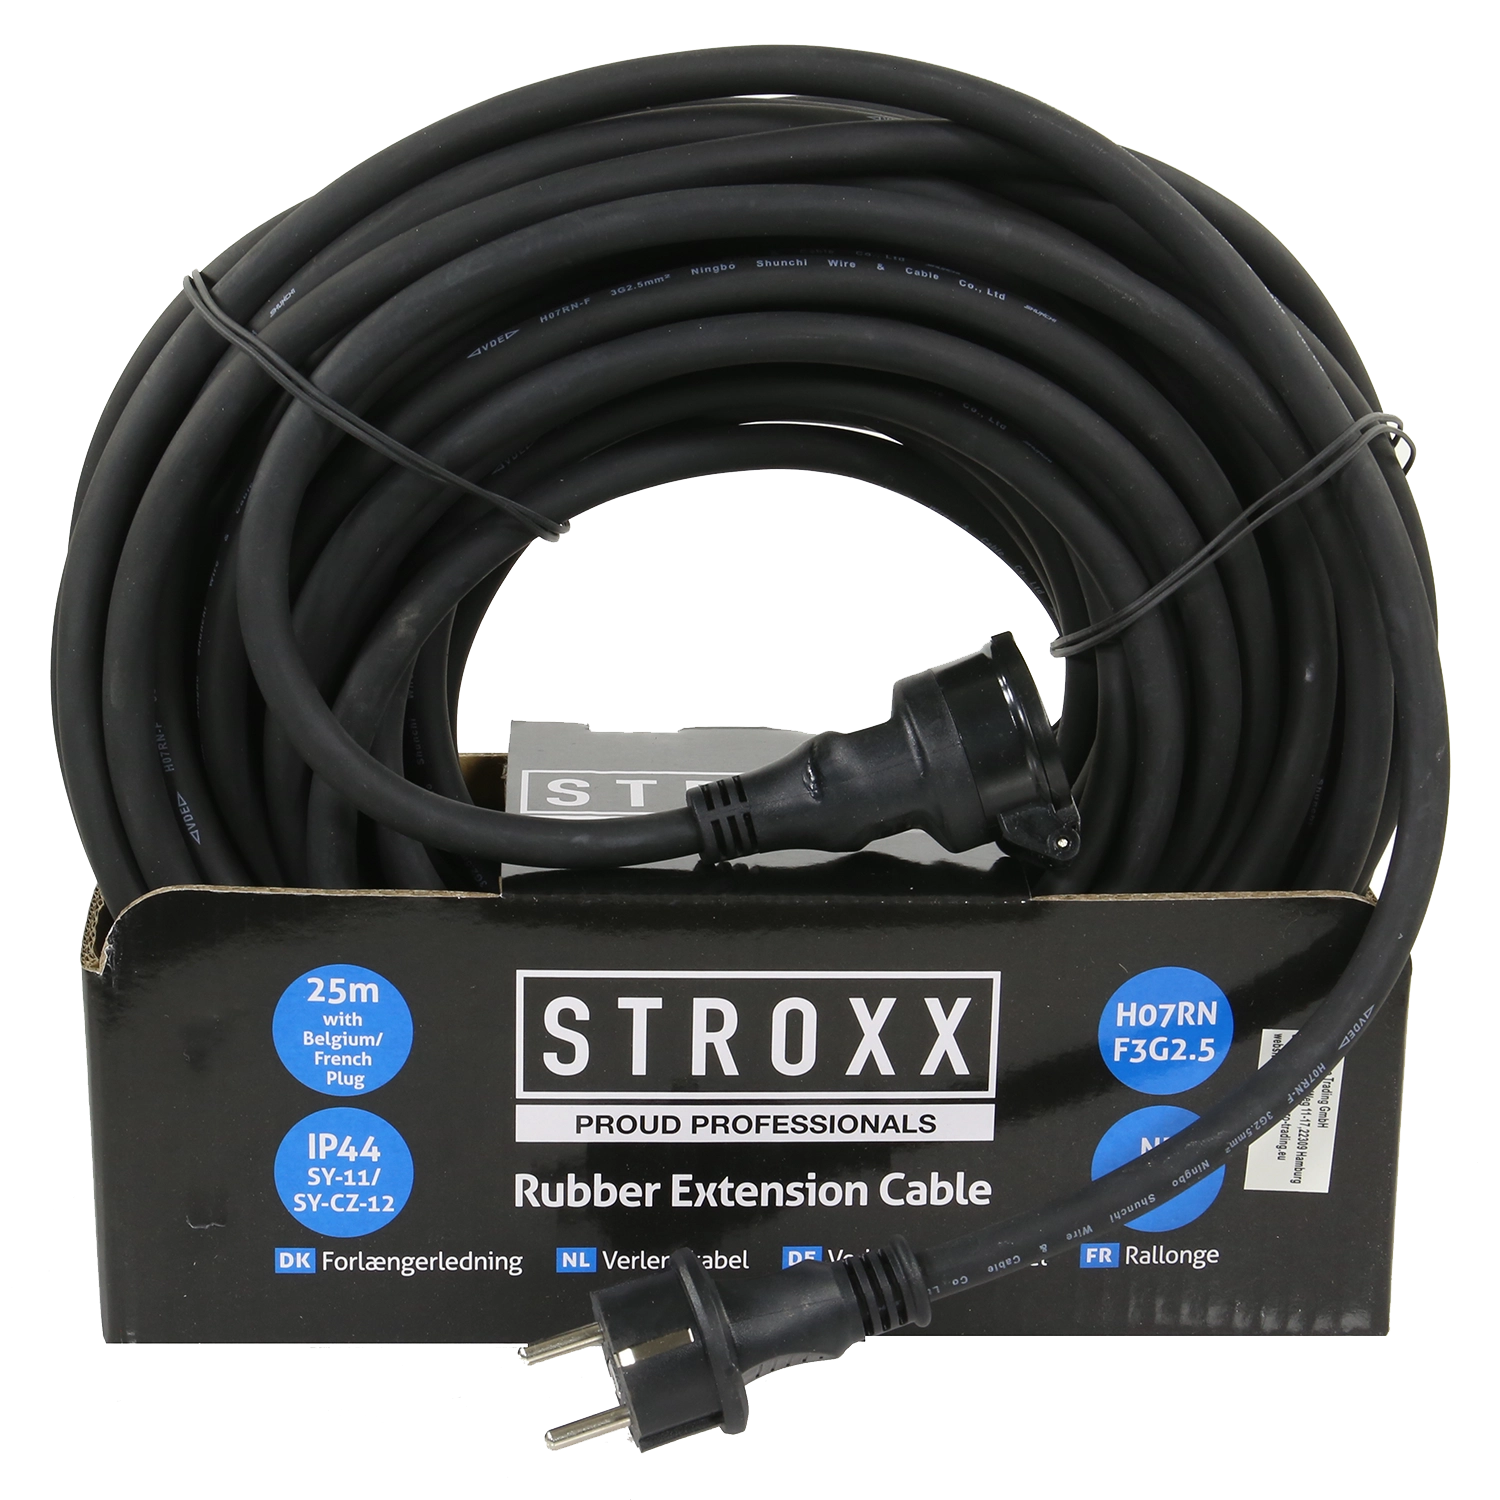 Zwarte STROXX verlengkabel van 25m. Met één stekker. Vastgebonden met spanbandjes en kartonnen verpakking.